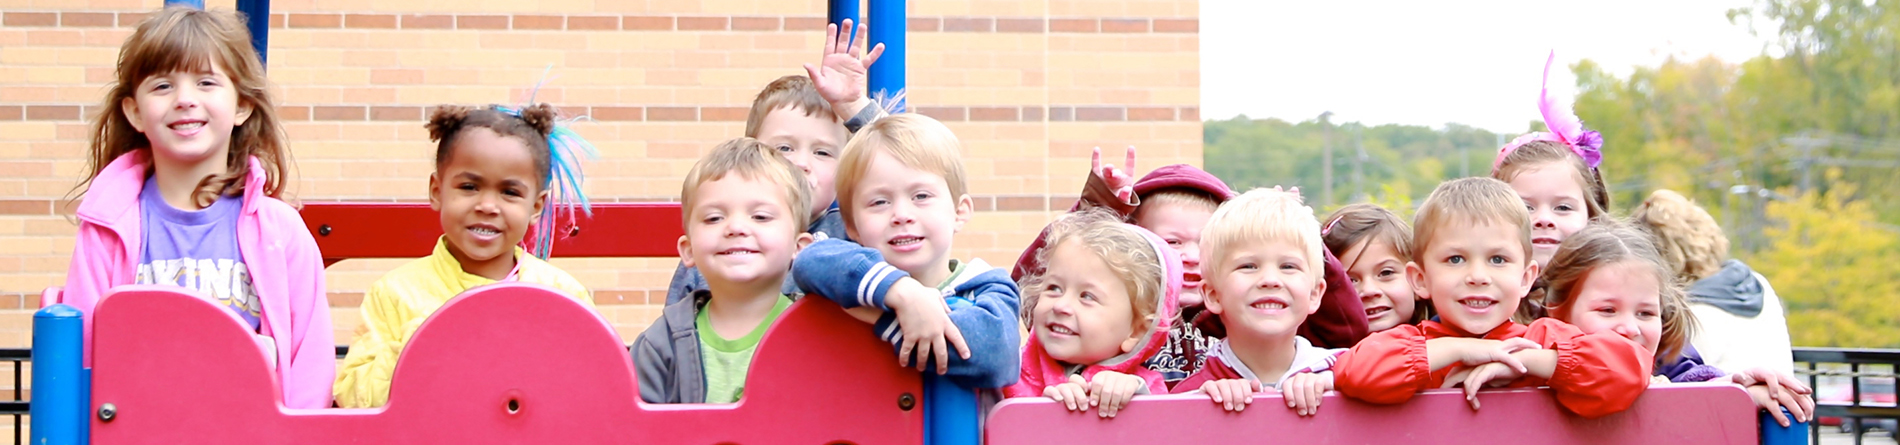 Children in playground smiling